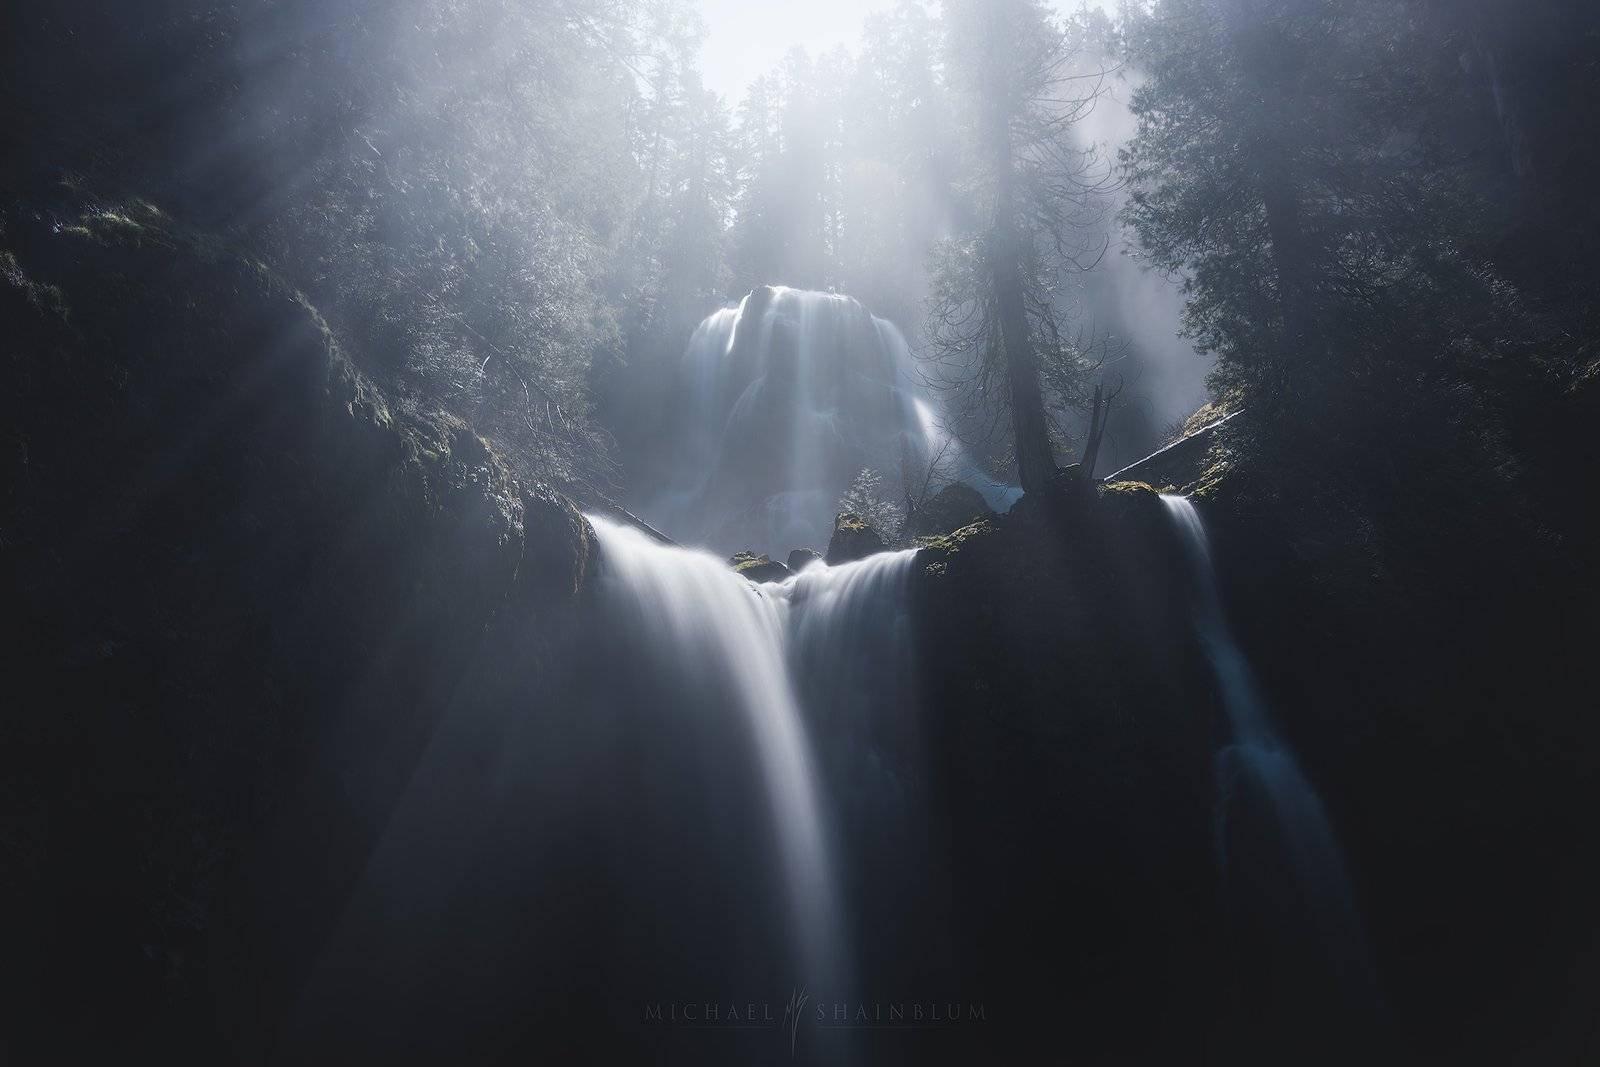 Washington Waterfall Landscape Photography.